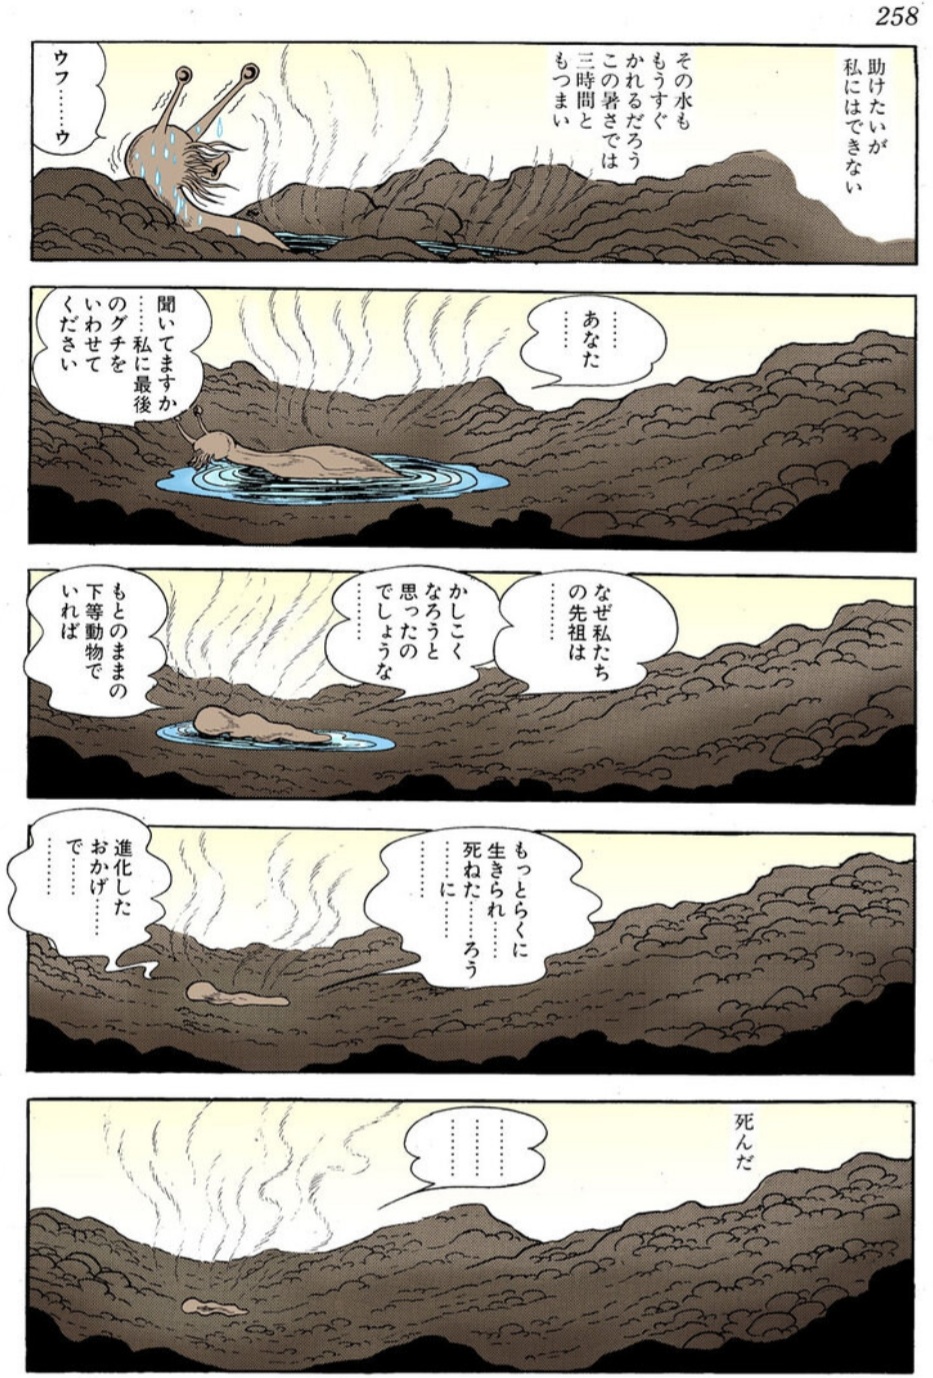 【悲報】漫画家の久米田さん、ブリーチを盛大にバカにしてしまうwymnwymnwymnwymnwymnwymn\n_1